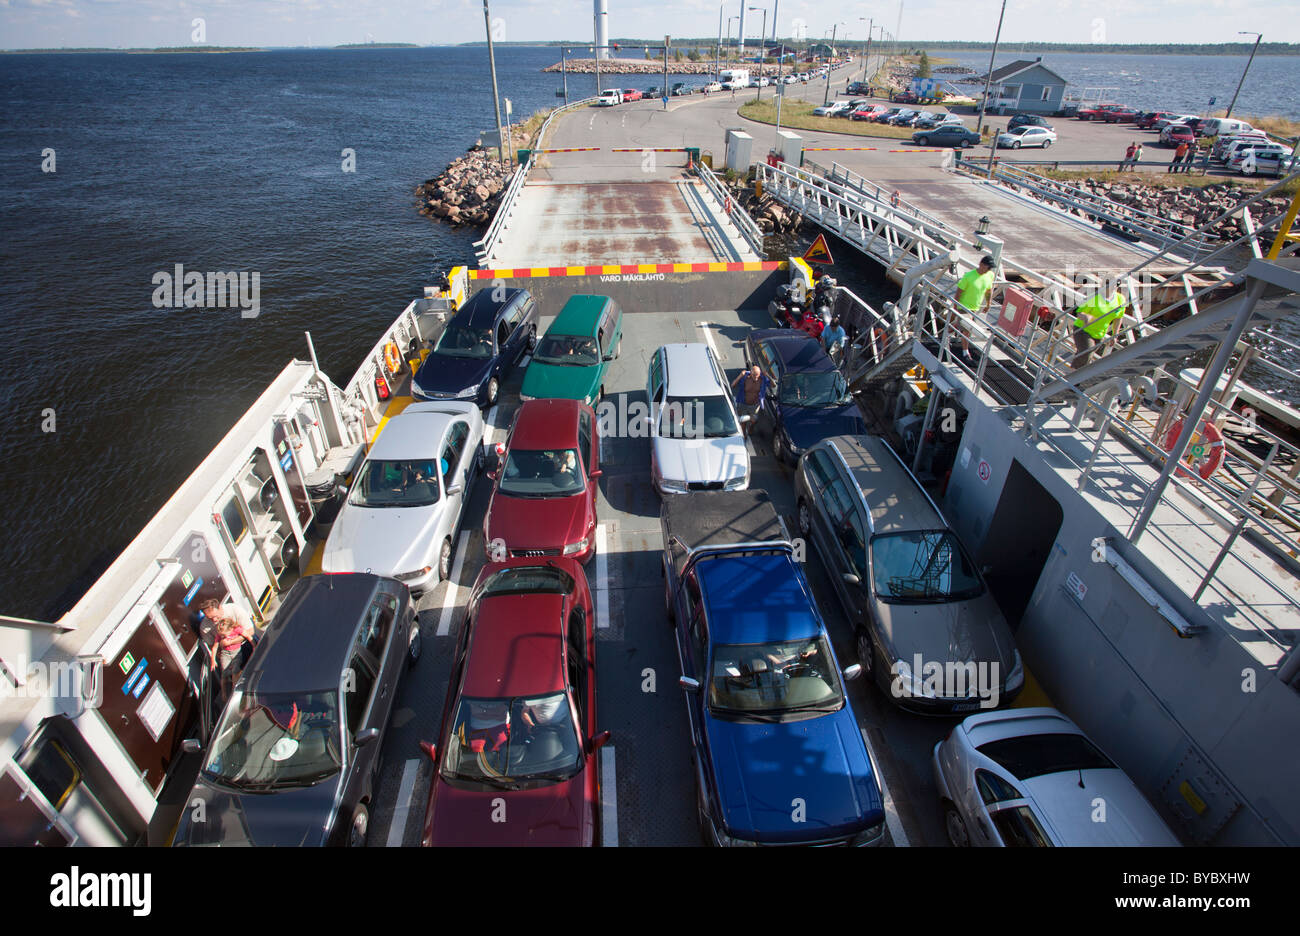 Les voitures et les gens dans un ferry qui part de la rive , Finlande Banque D'Images